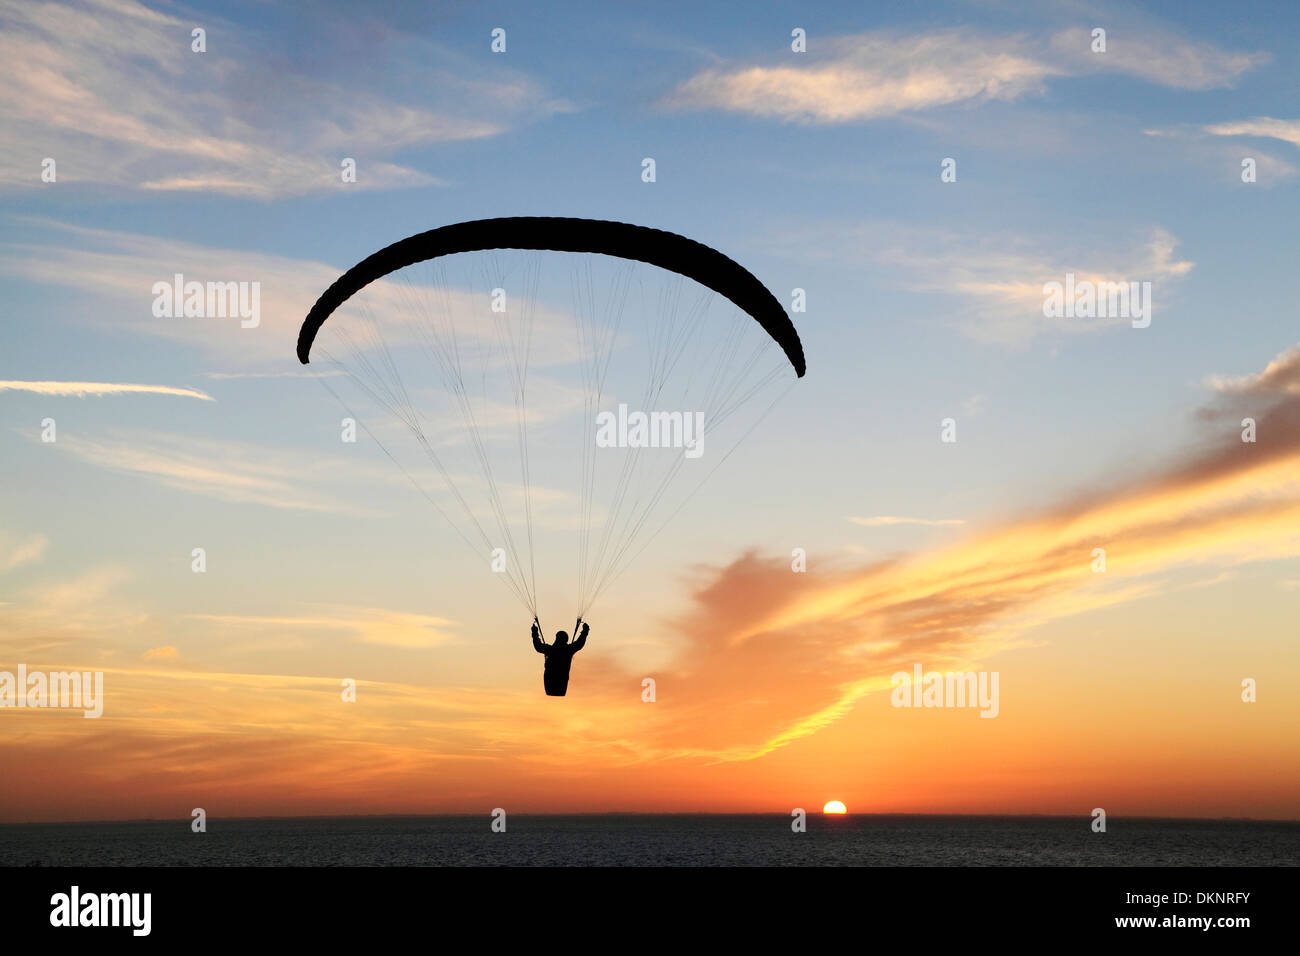 Parapente au coucher du soleil, les planeurs deltaplane homme silhouette silhouettes parachute setting sun England UK Norfolk Hunstanton Banque D'Images